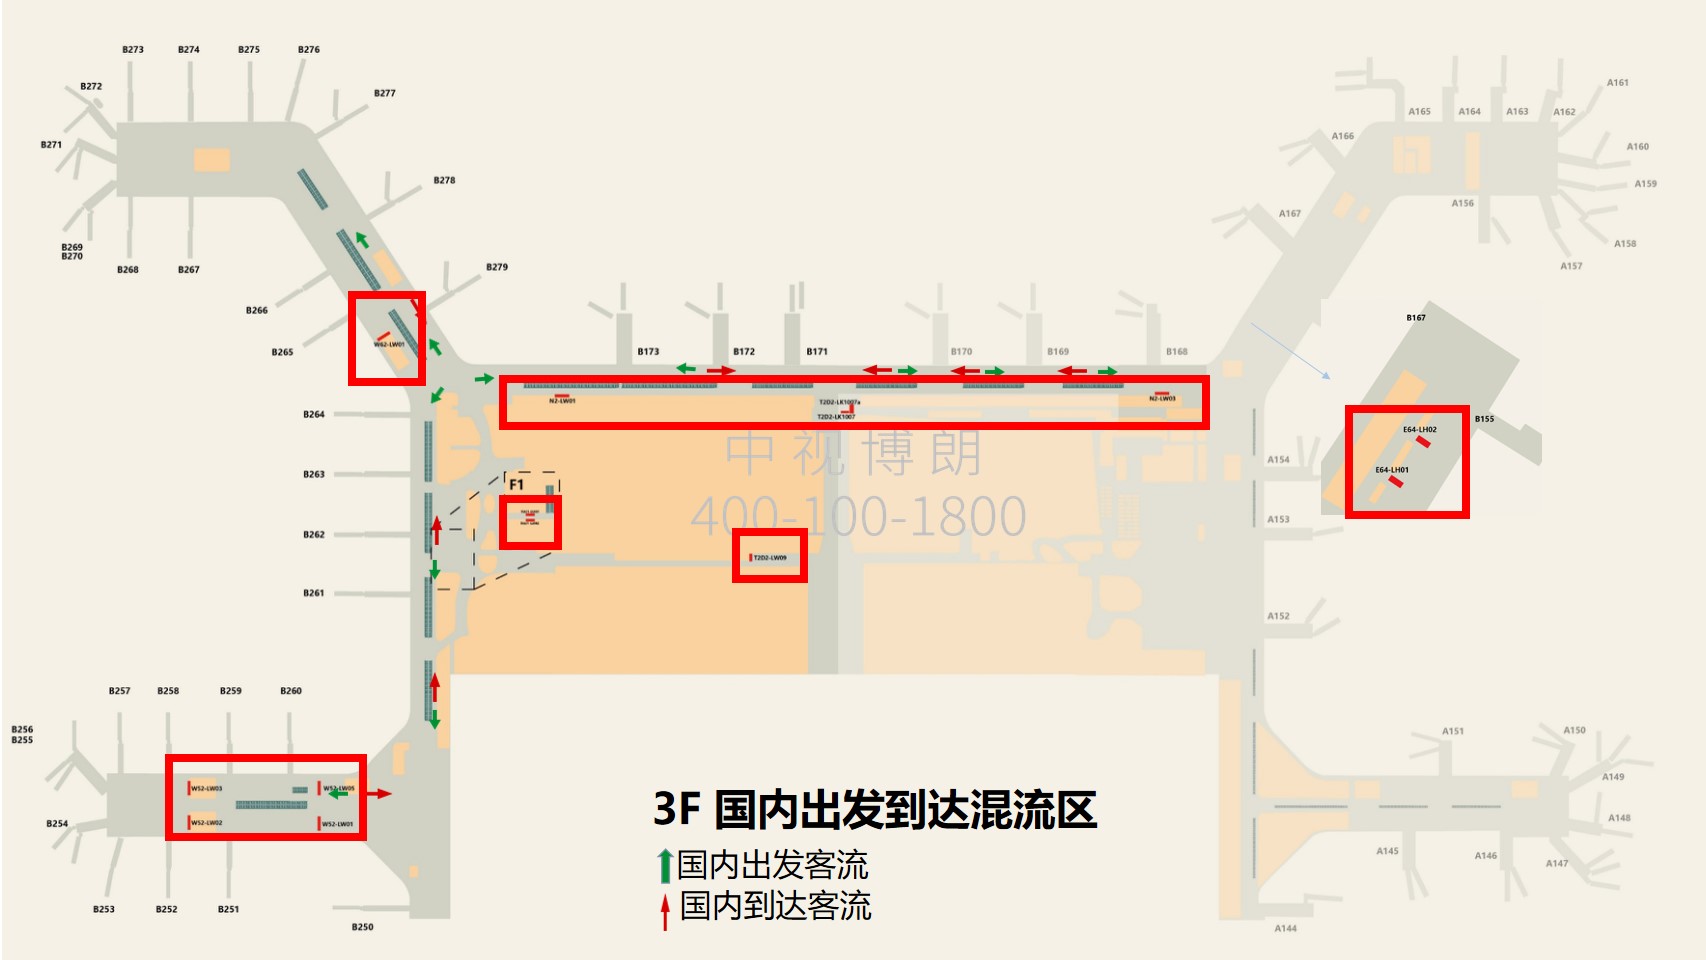 广州机场广告-T2国内混流区灯箱套装1点位图